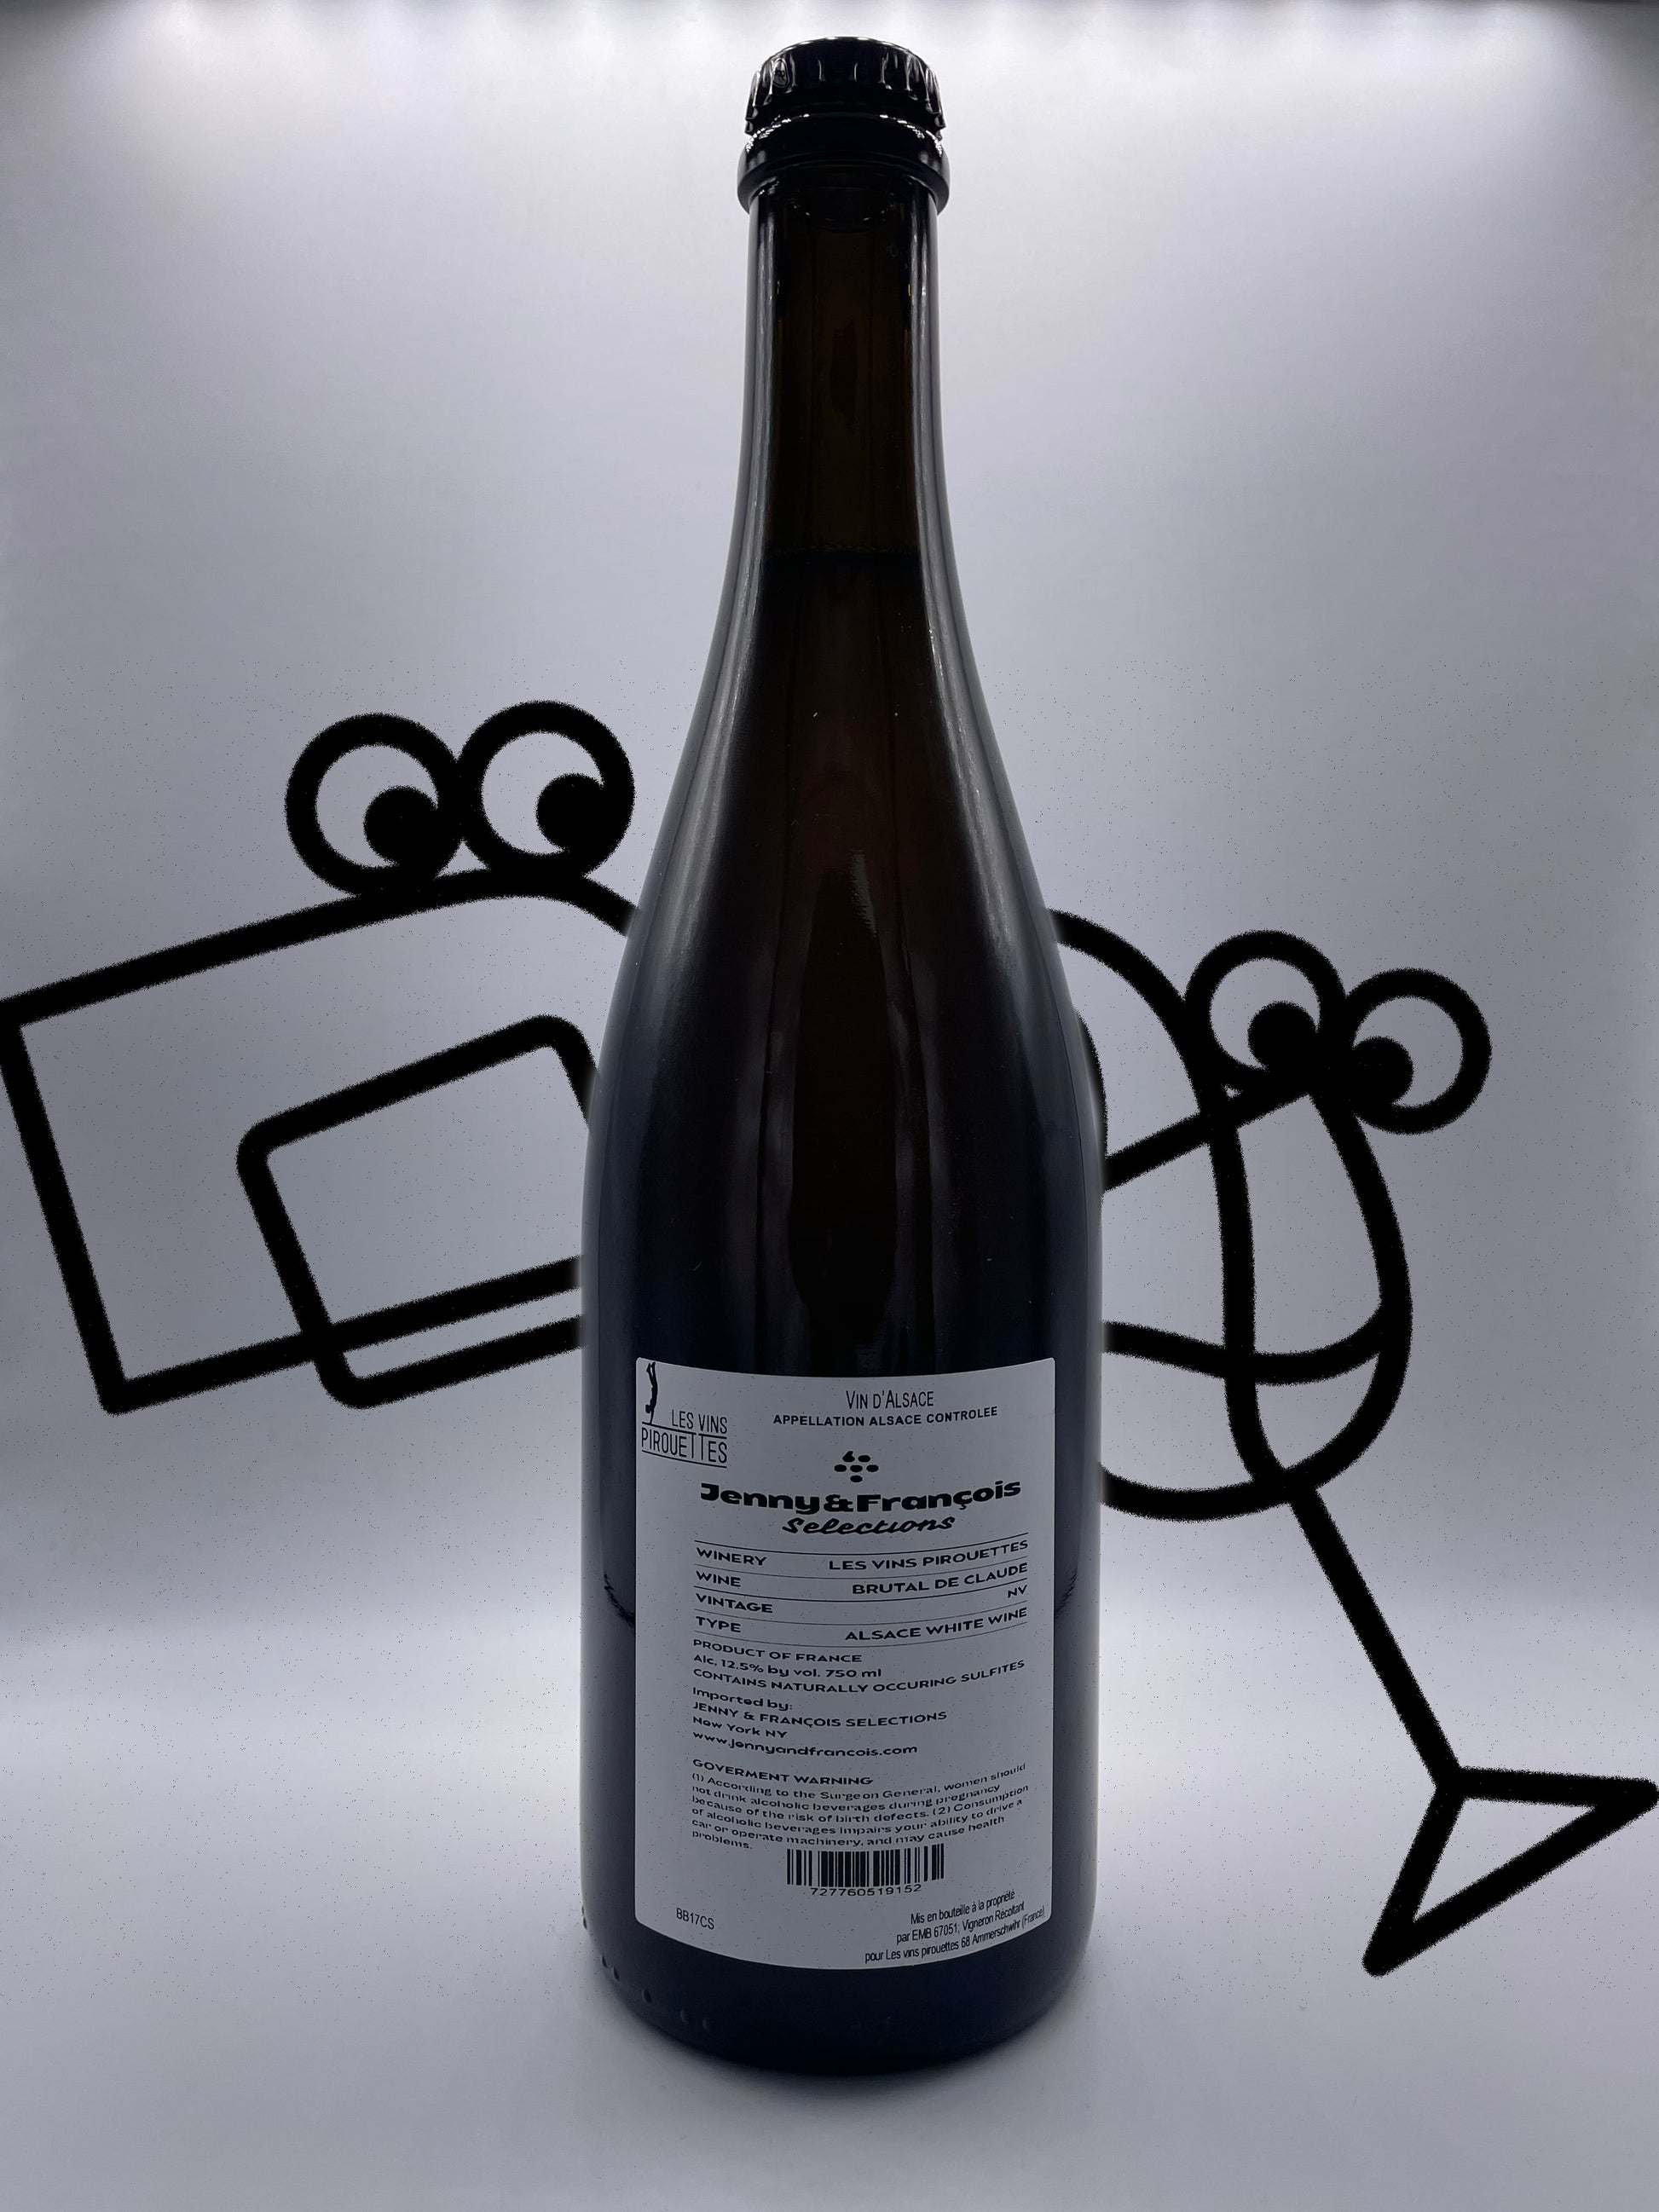 Les Vins Pirouettes 'Le Brutal de Claude Blanc' NV Alsace, France - Williston Park Wines & Spirits